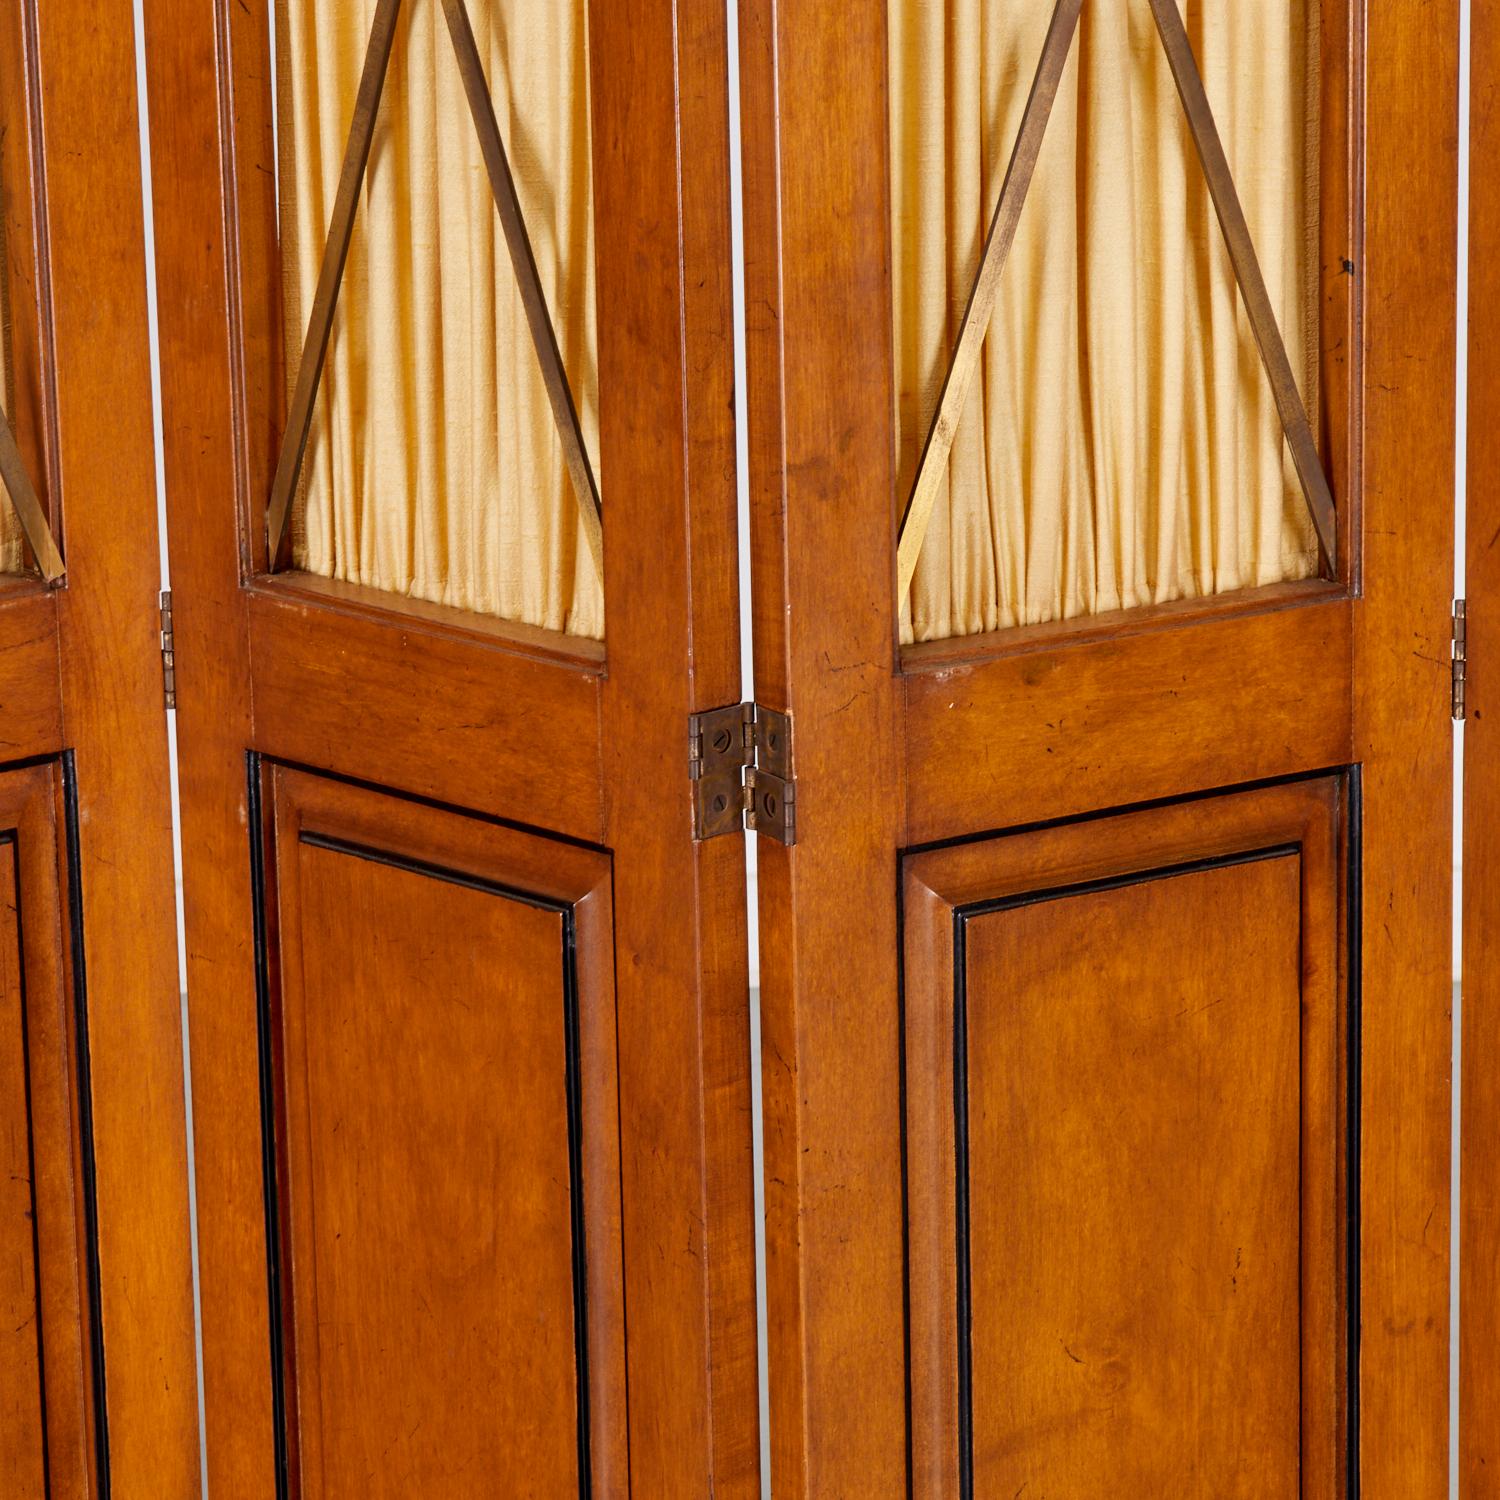 20e s., un colis à 5 panneaux de style Biedermeier en acajou ébonisé avec des rideaux de soie couleur champagne et une grille en laiton x panneaux, non marqué.

Cette cloison permet de préserver une partie de l'intimité et de laisser passer la